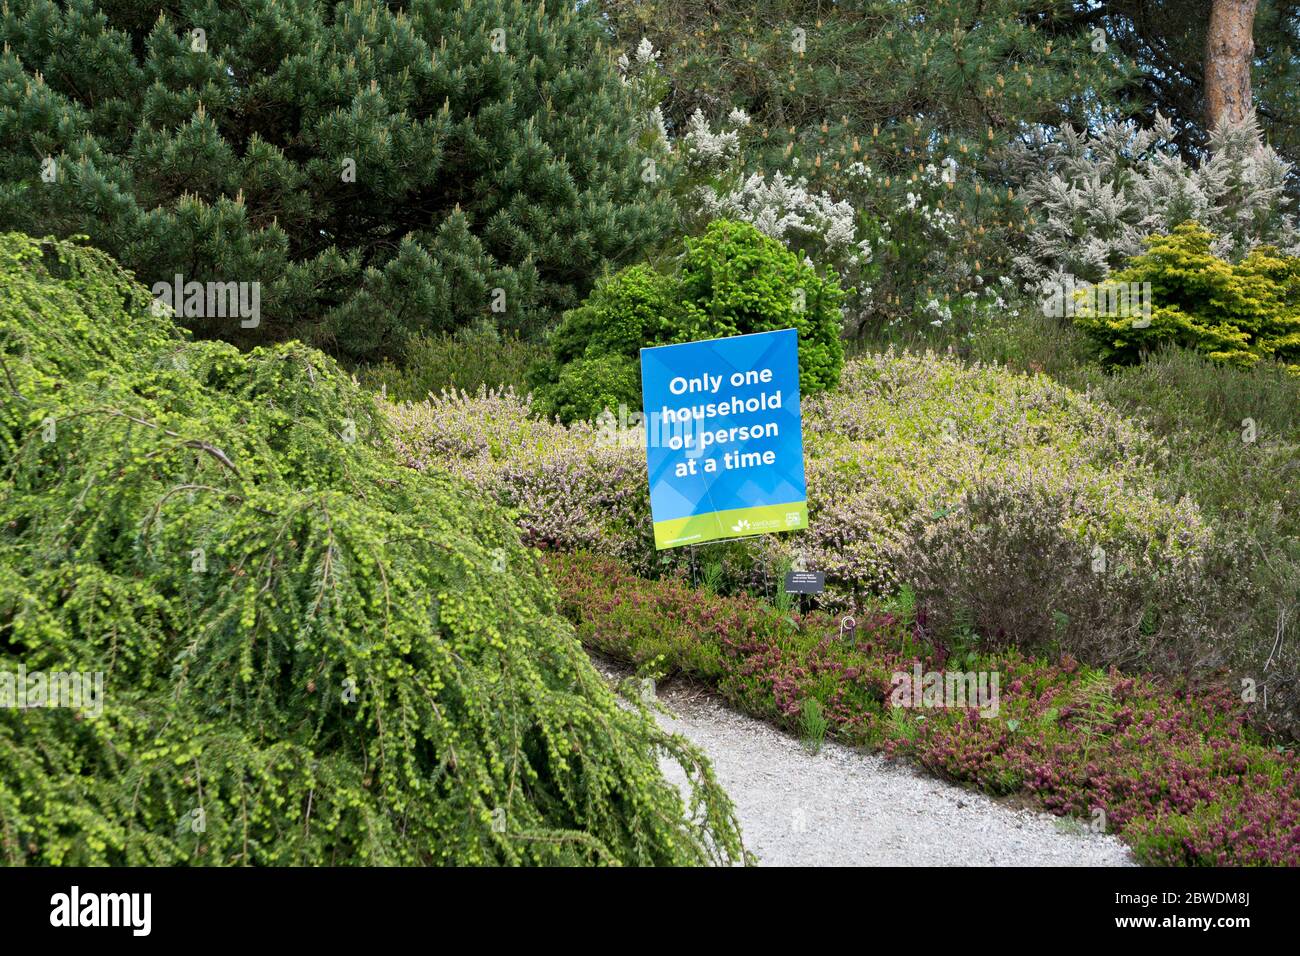 Zeichen mit Anweisungen zur Förderung der physischen Distanzierung während der Covid-19-Pandemie im botanischen Garten van dusen. Stockfoto